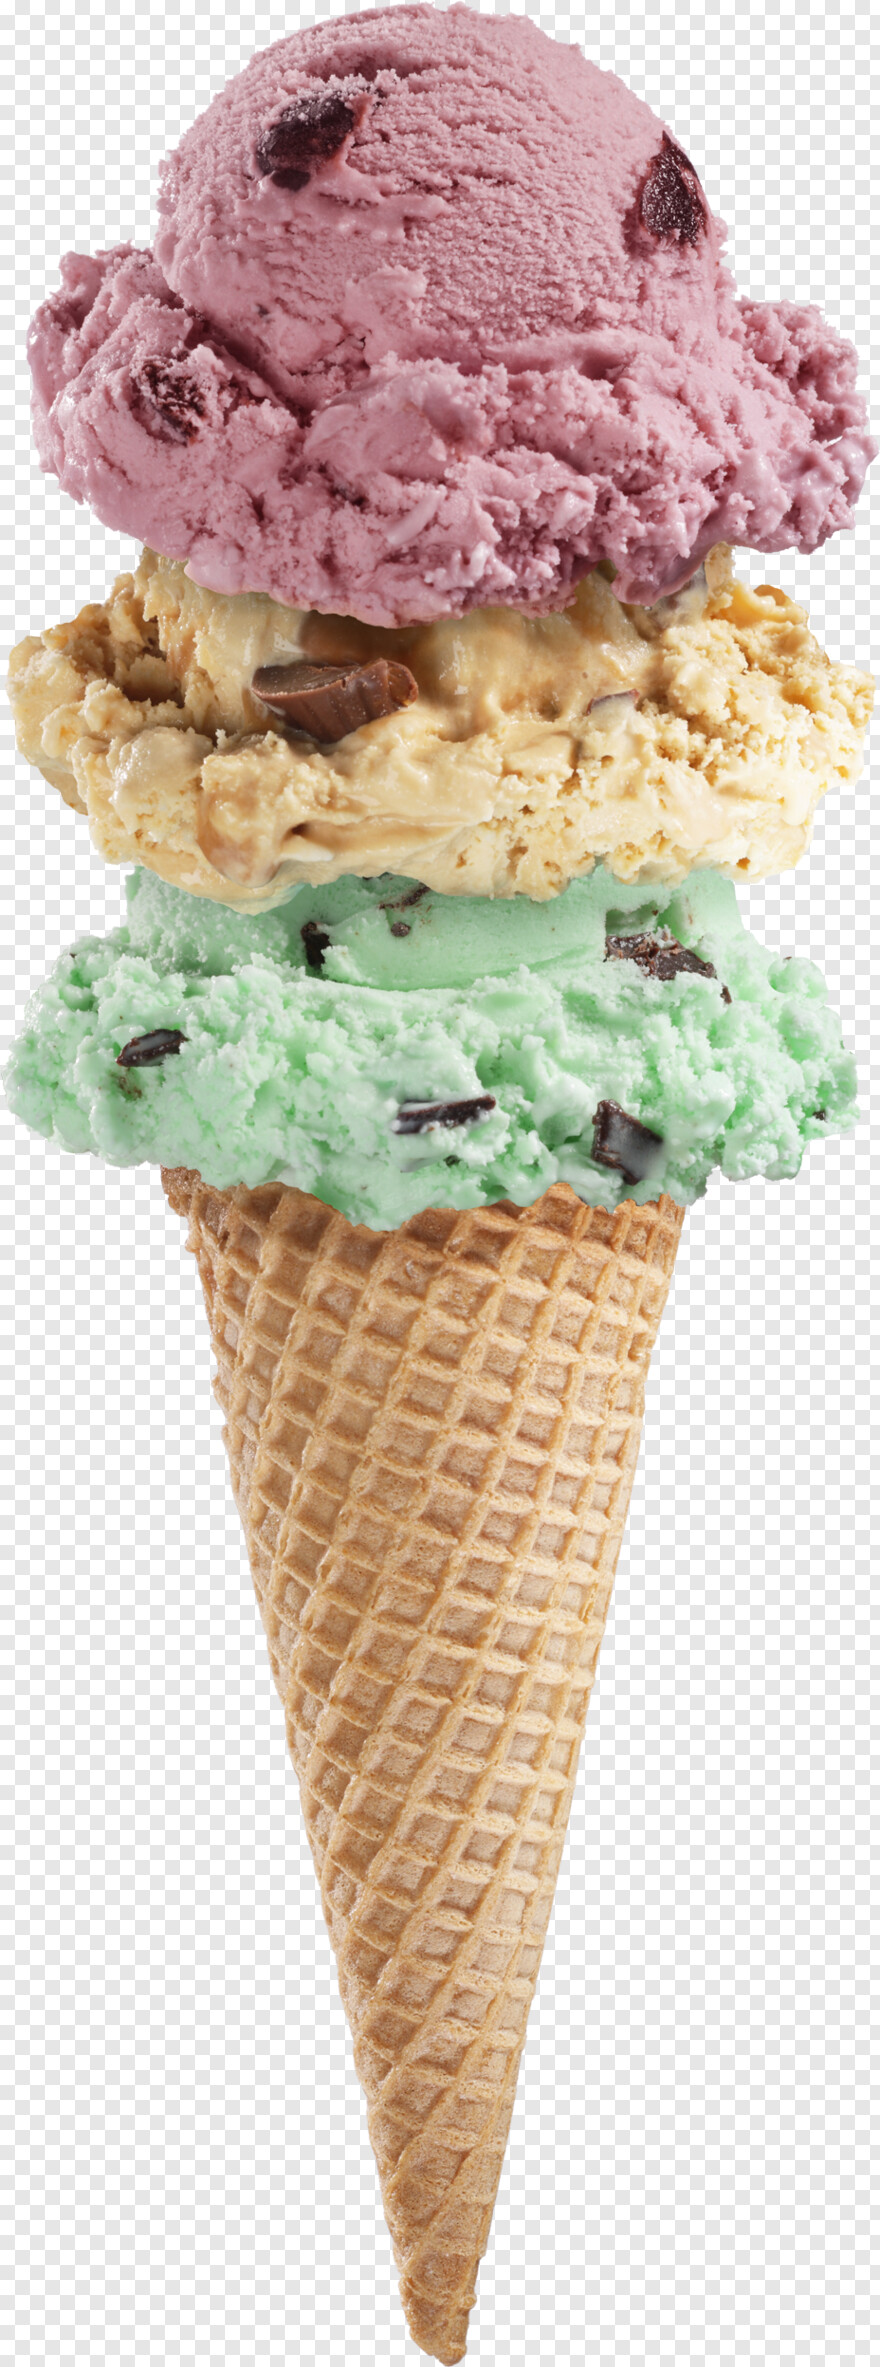 ice-cream-sundae # 966720